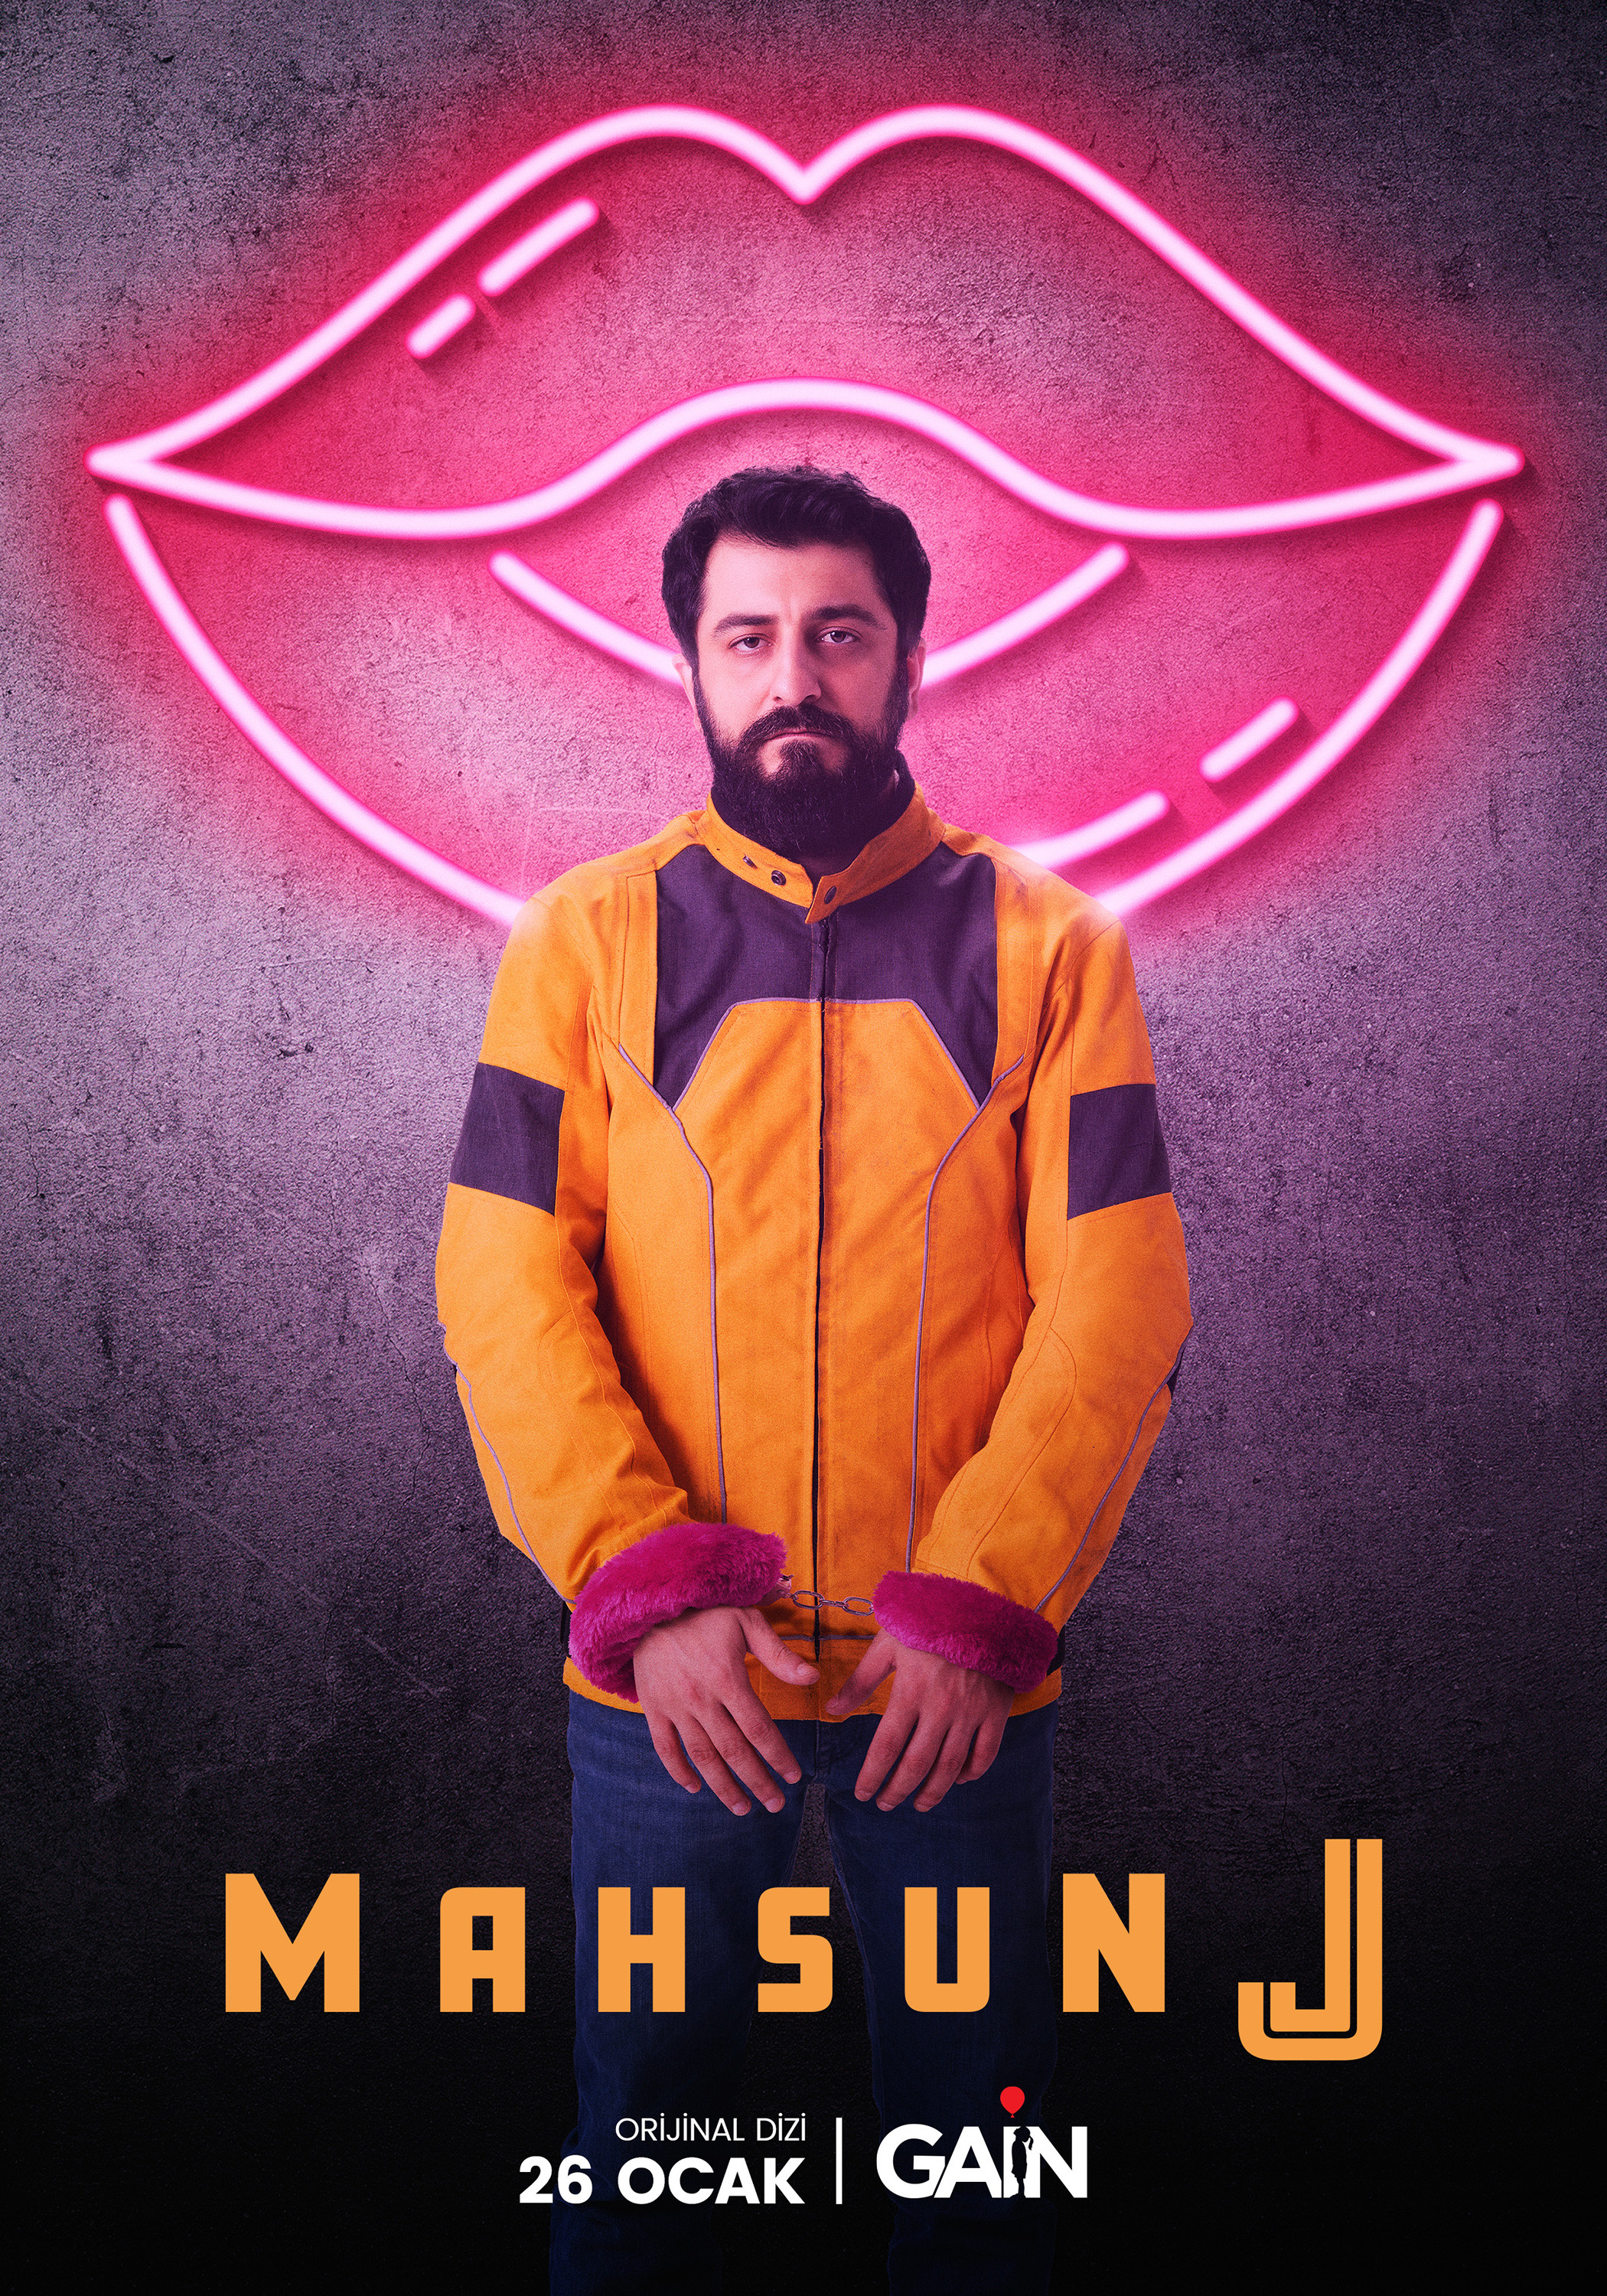 Mega Sized TV Poster Image for Mahsun J 